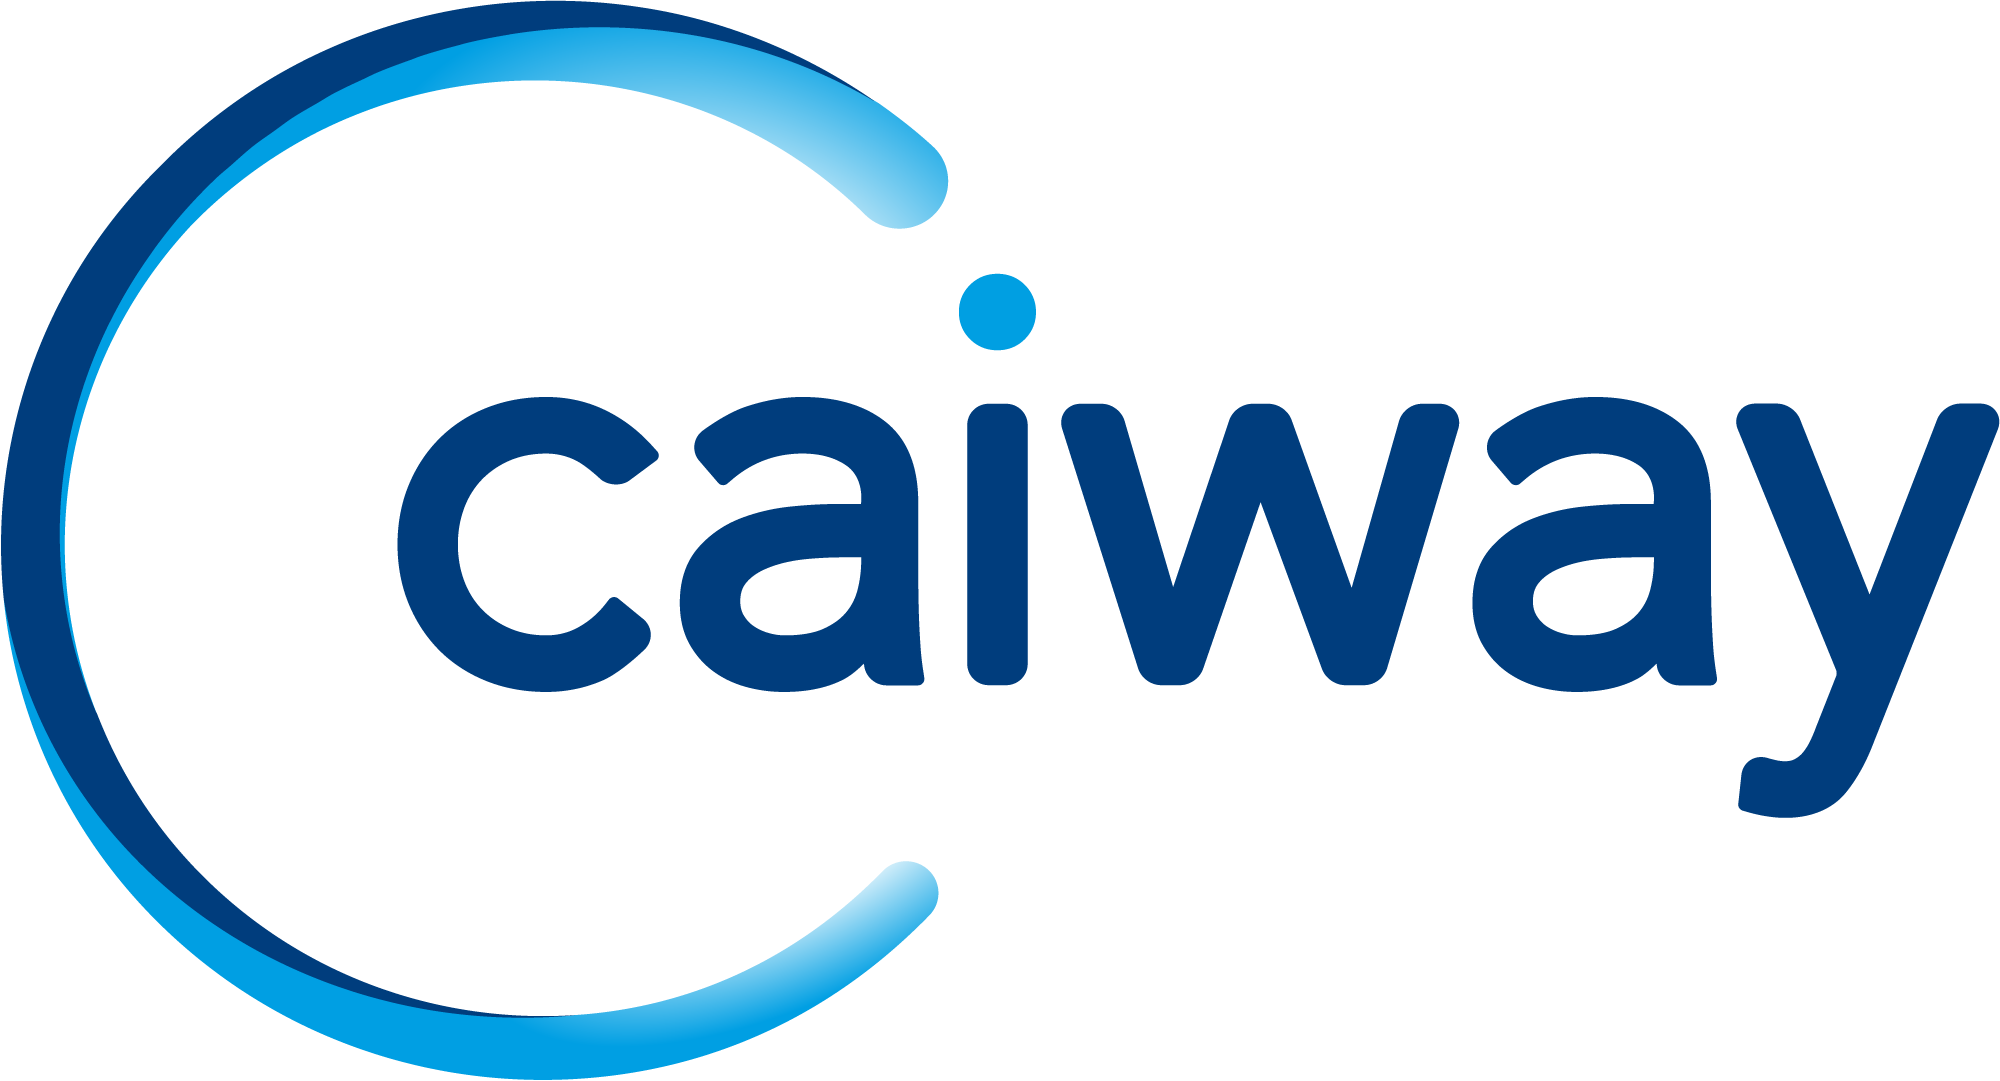 Logo Caiway